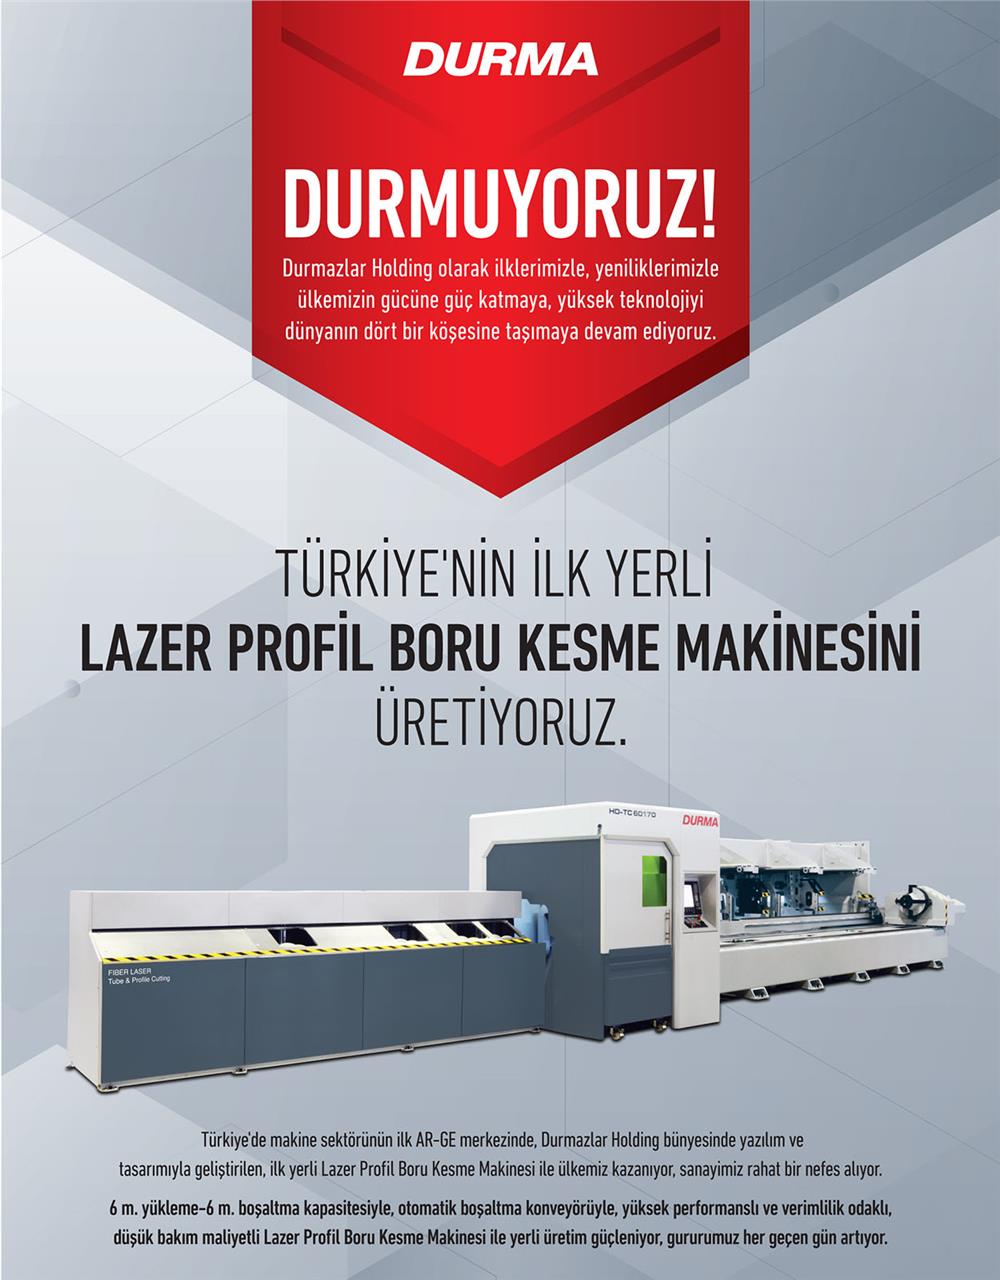 Türkiye'nin ilk yerli #LAZER profil bükme kesme makinesi üretimi.